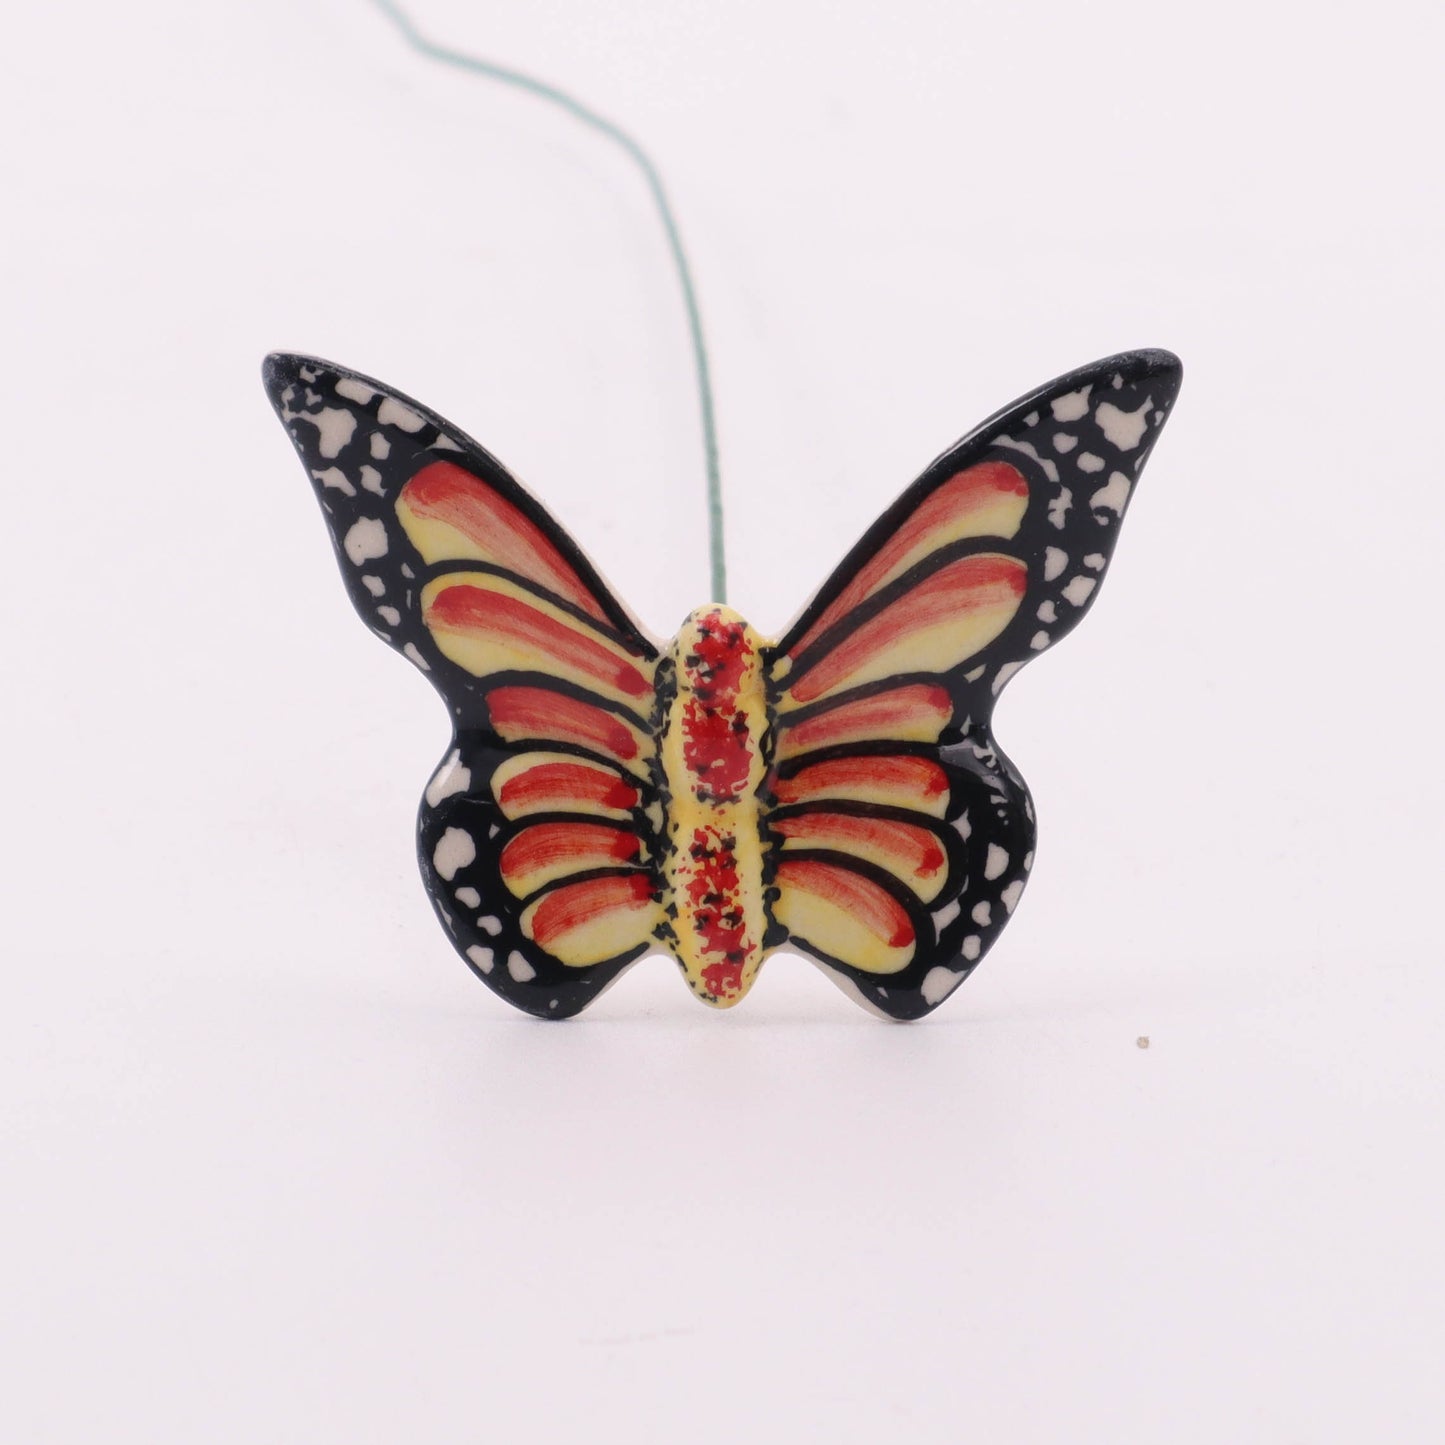 Butterfly on Stem. Pattern: Orange